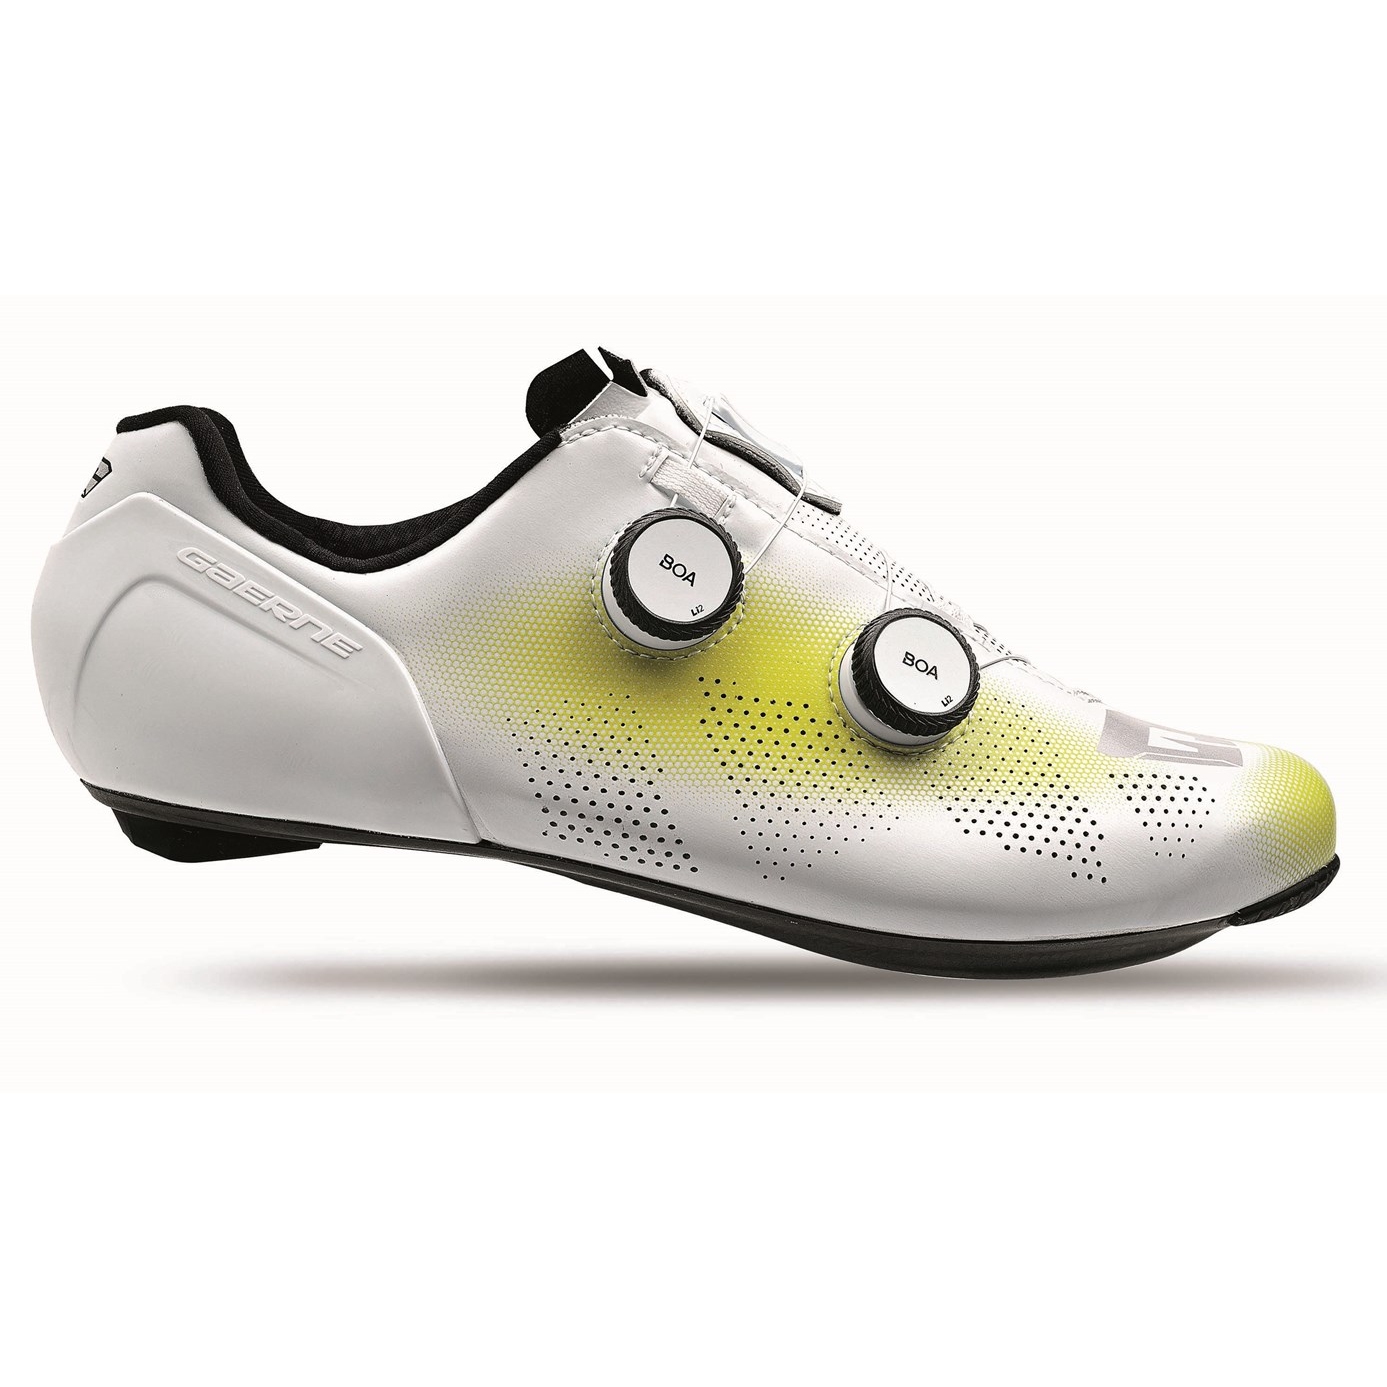 Produktbild von Gaerne Carbon G.STL Rennradschuhe - Light Flo Yellow White